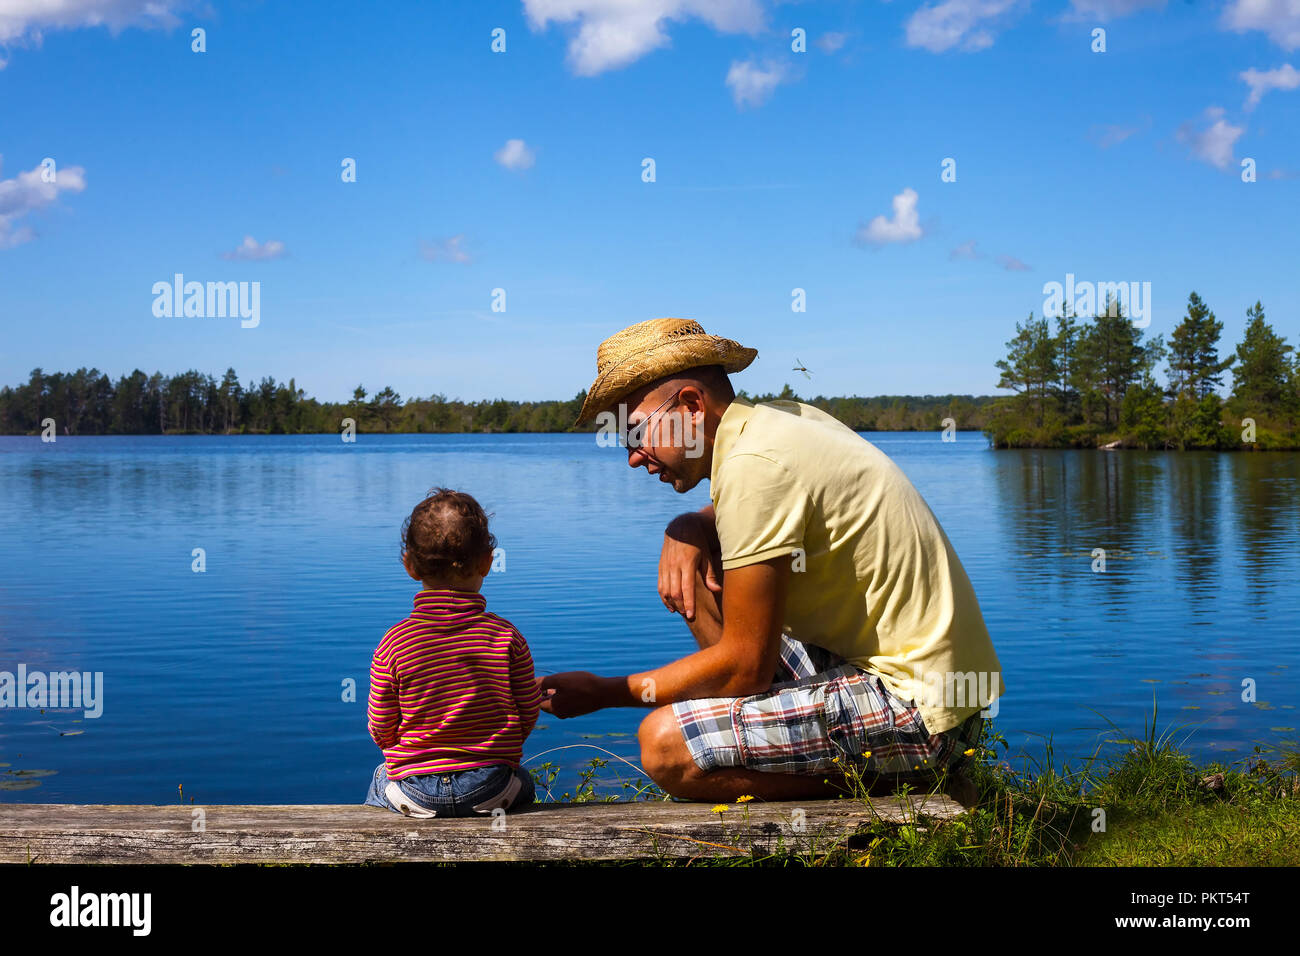 El padre y el hijo en el lago - Concepto de paternidad Foto de stock